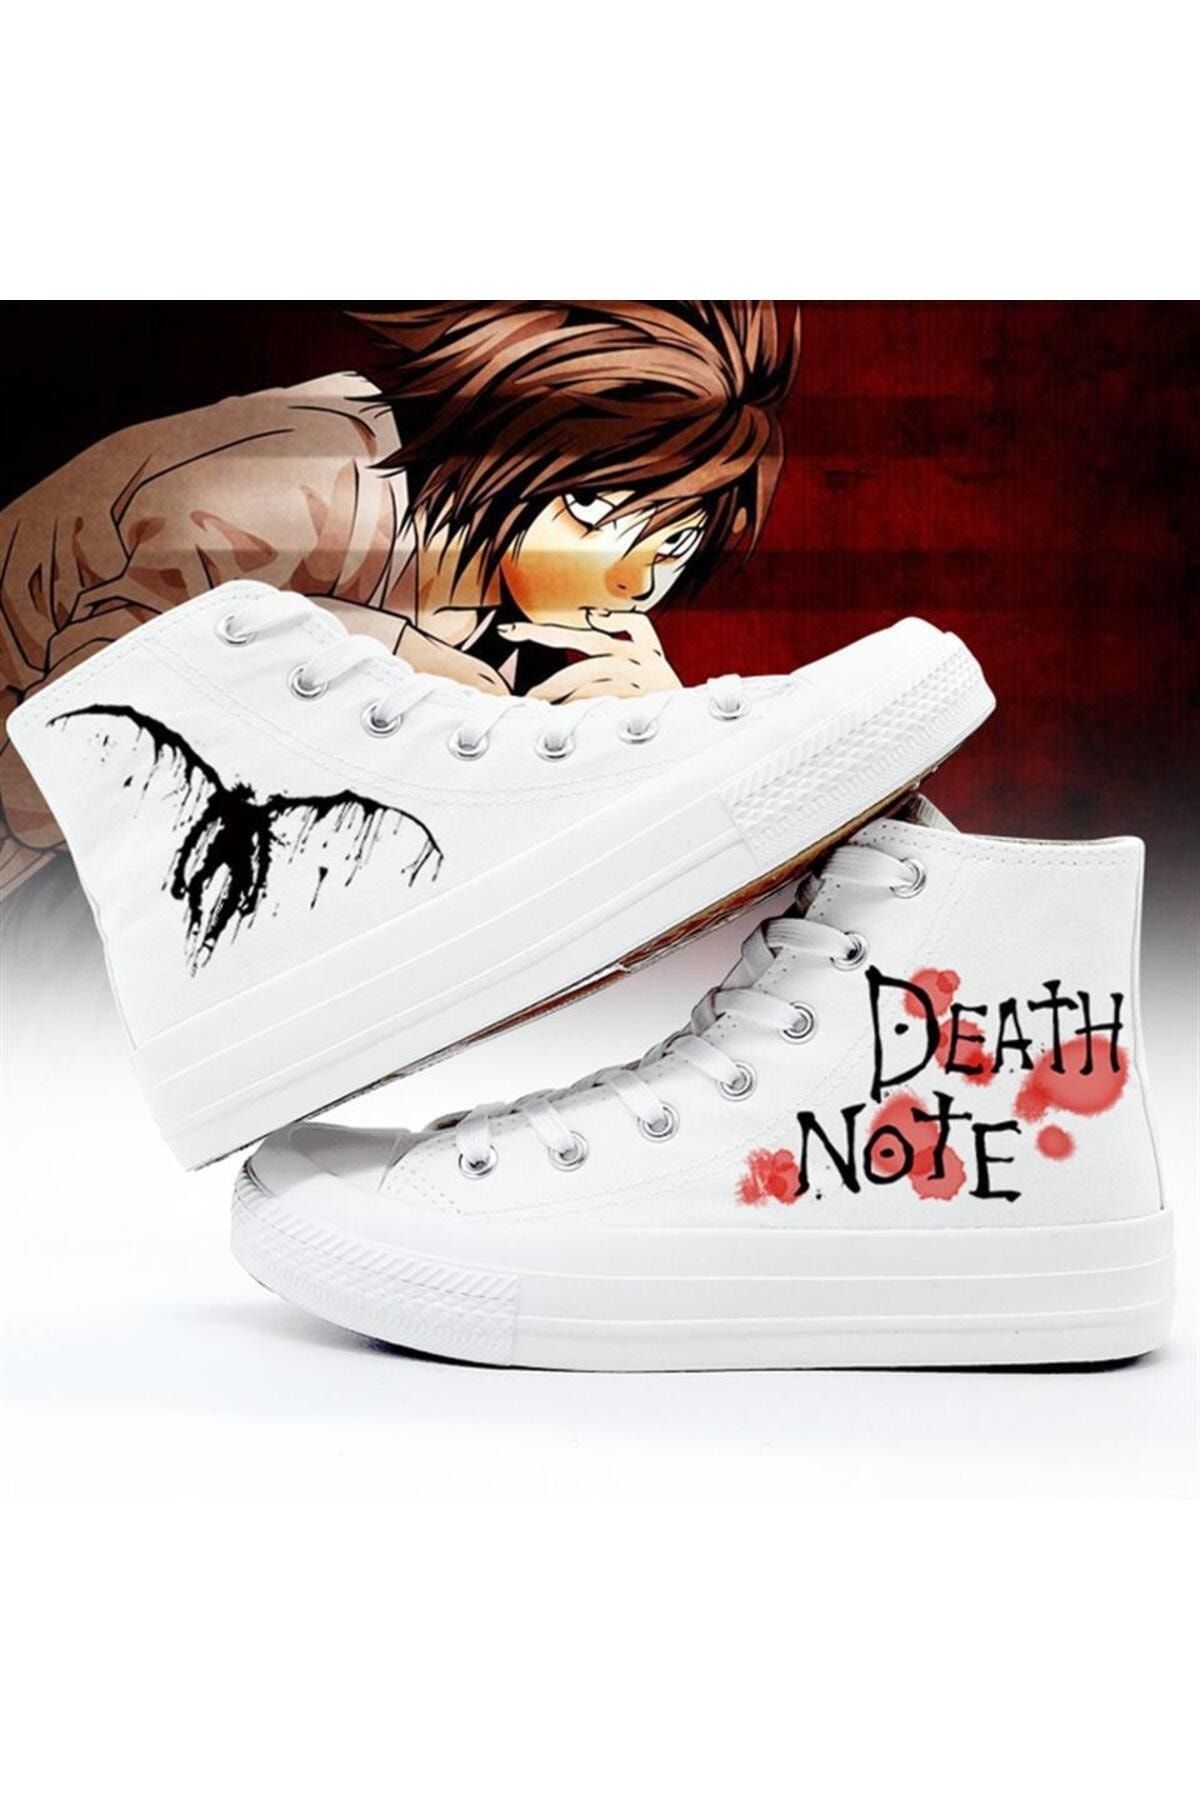 Gofeel Day Light Death Note Baskılı Beyaz Unisex Kanvas Ayakkabı